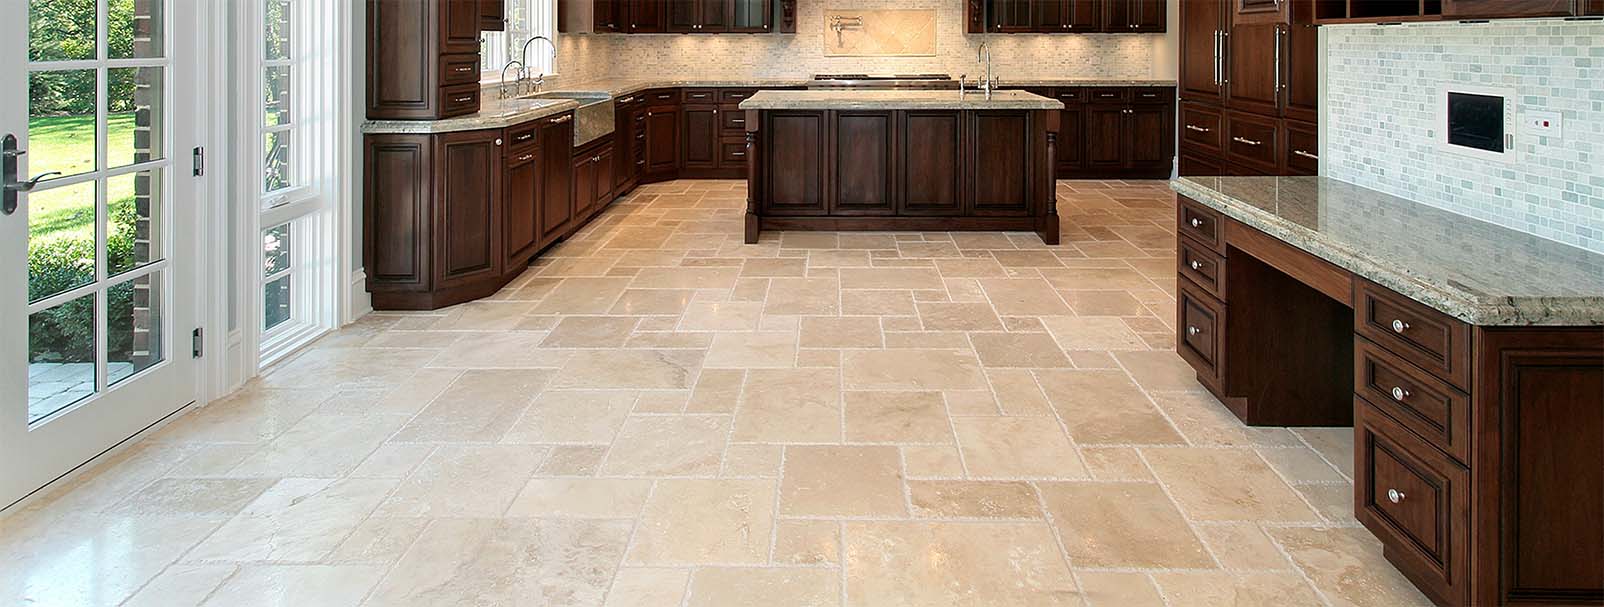 clean kitchen tile floor